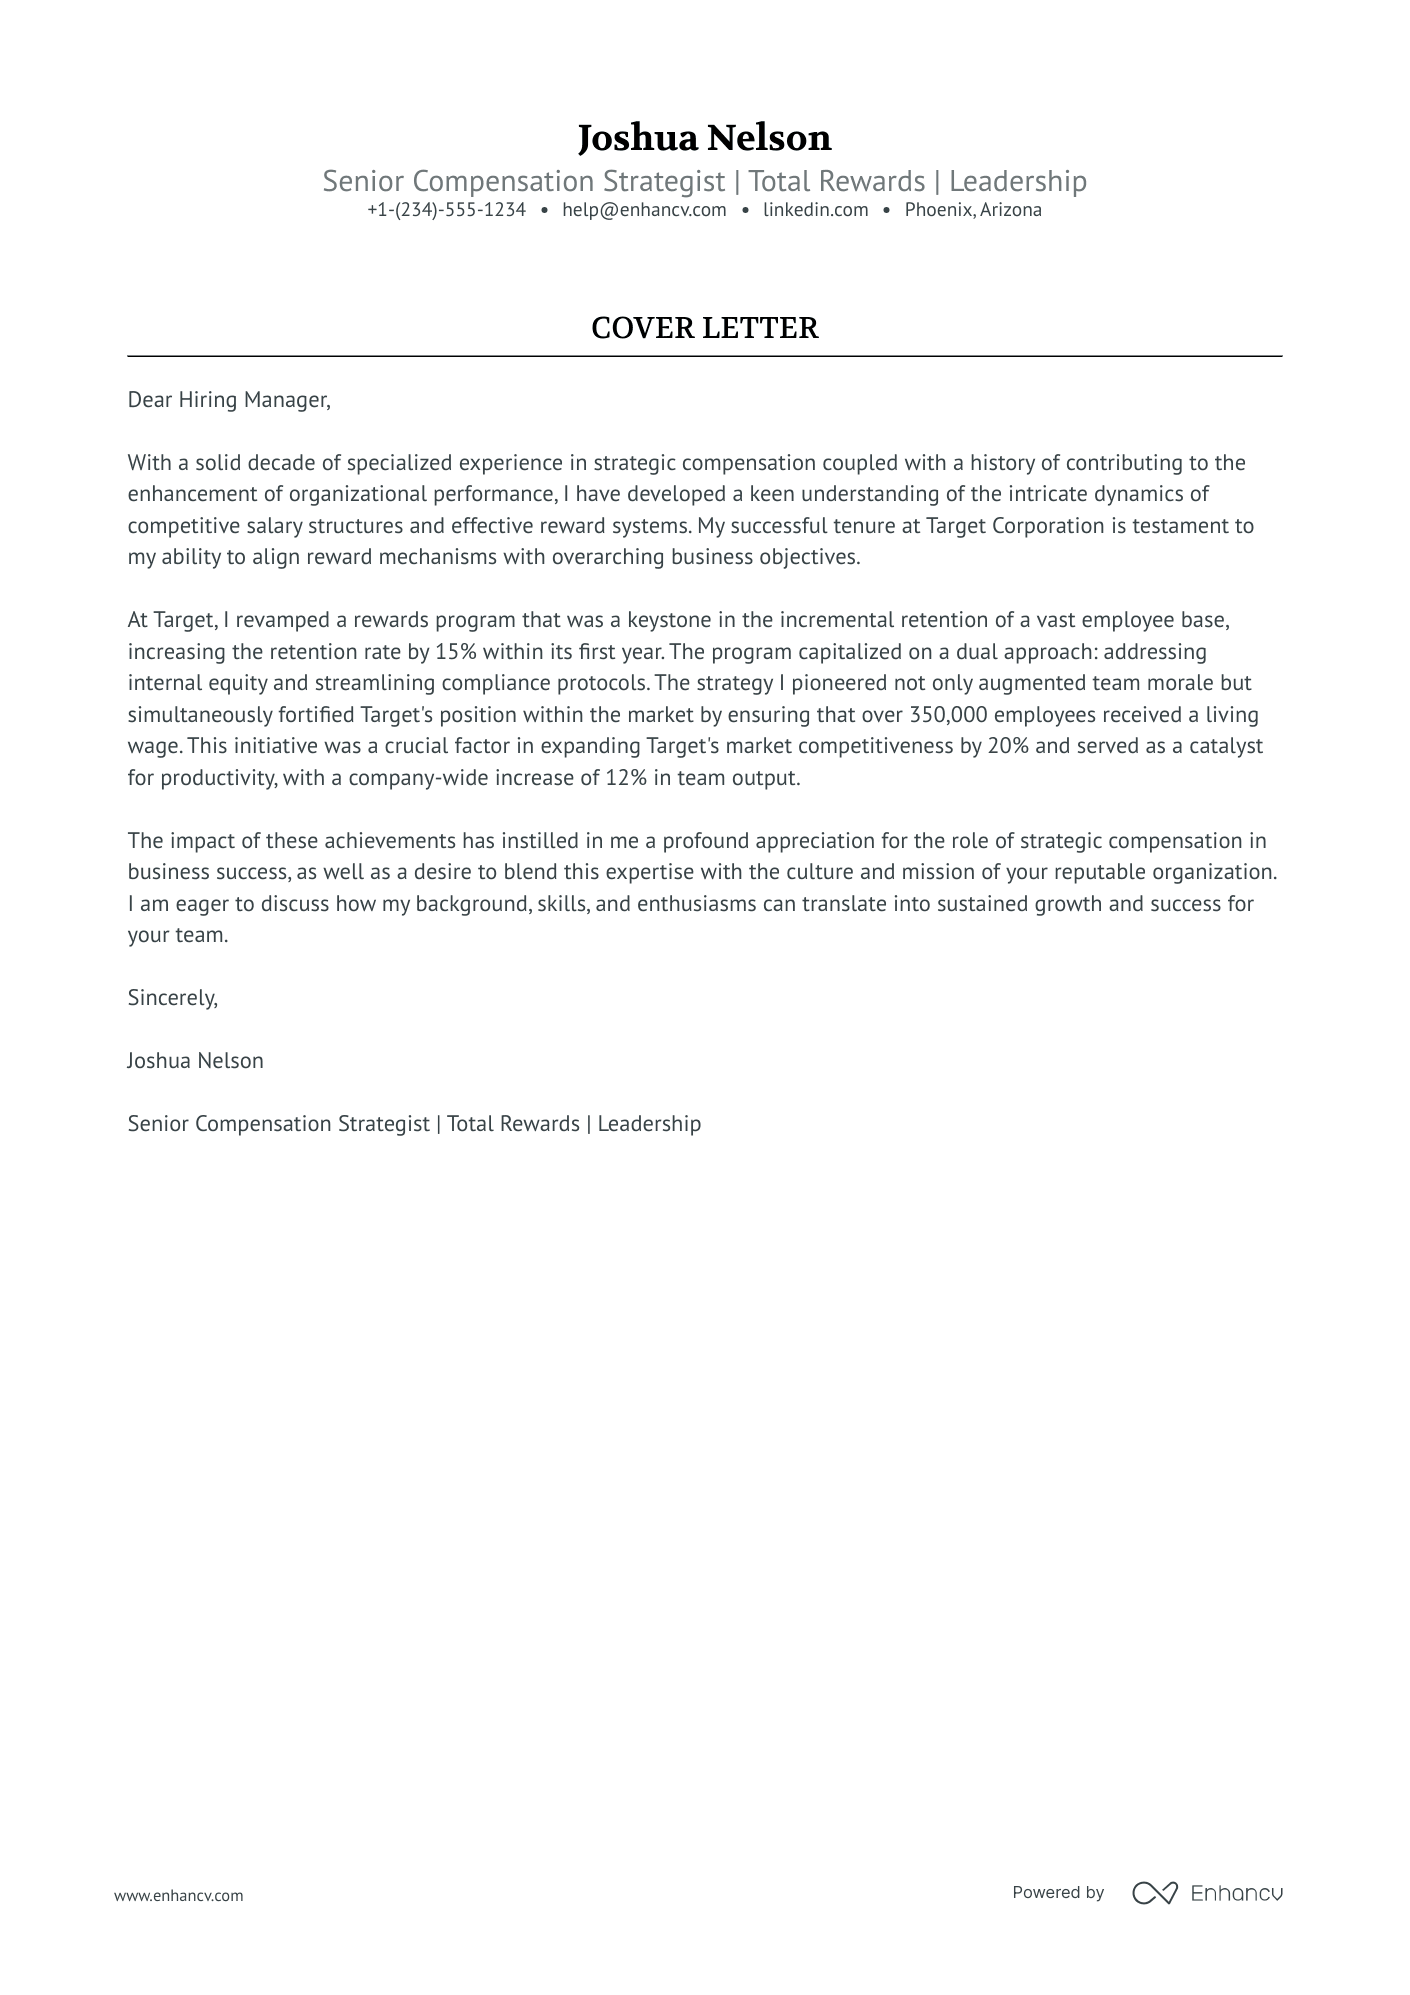 Senior Director cover letter